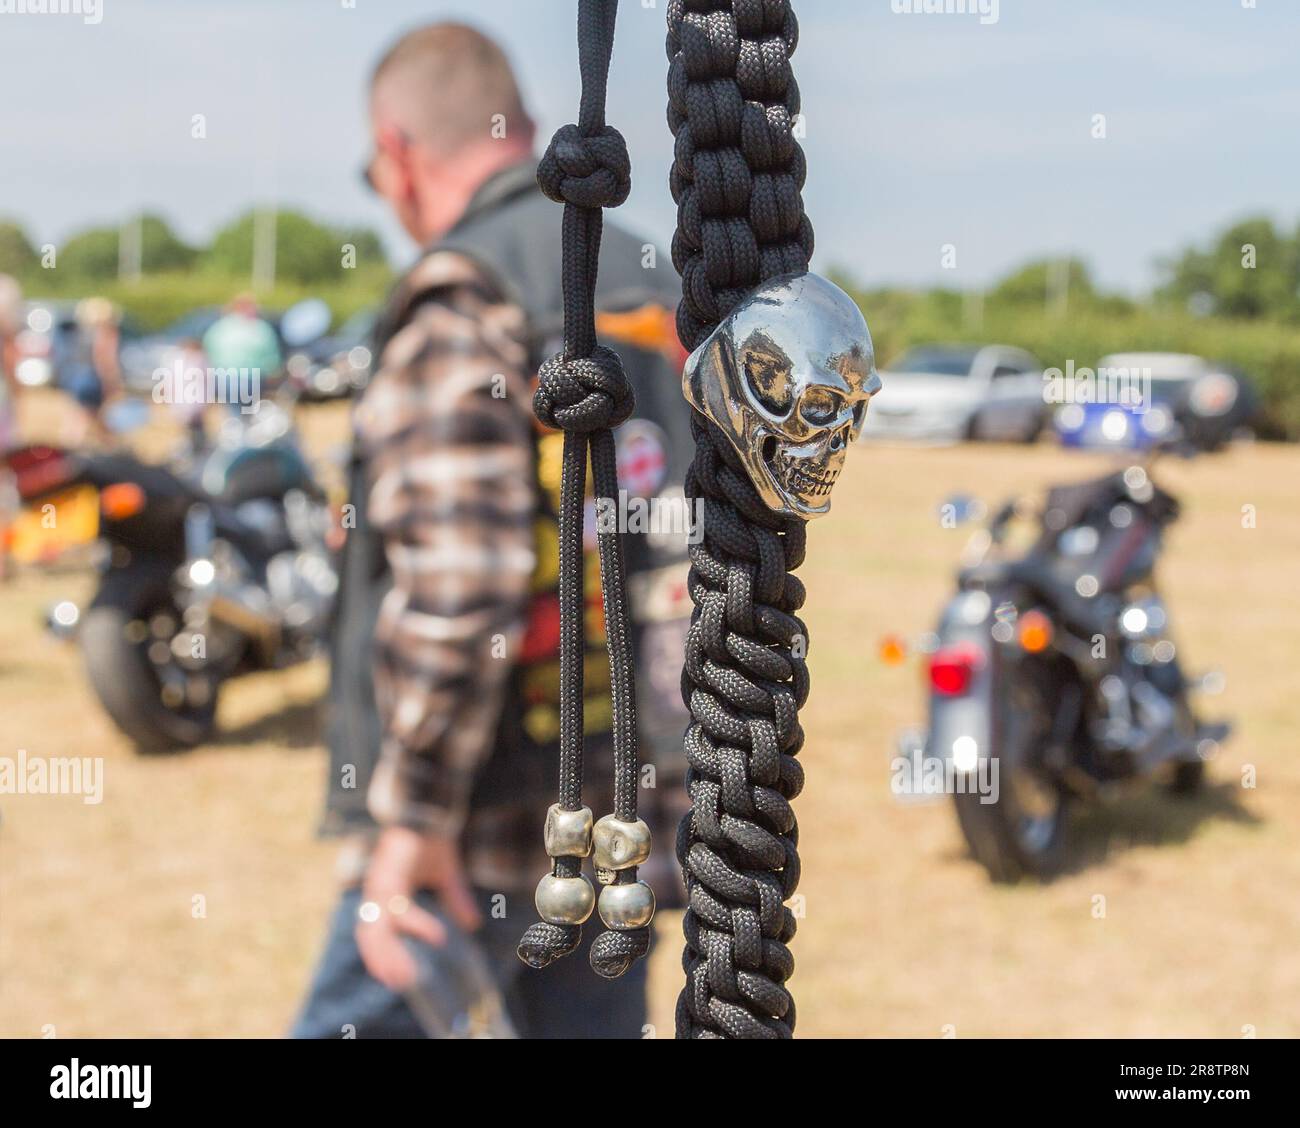 Ein silberner Schädel auf einer schwarzen geflochtenen Kette, die an einem Motorradlenker hängt. Ein Biker, der vorbeiläuft und ein Bierglas hält, verleiht der Szene ein ausgefallenes Gefühl. Stockfoto